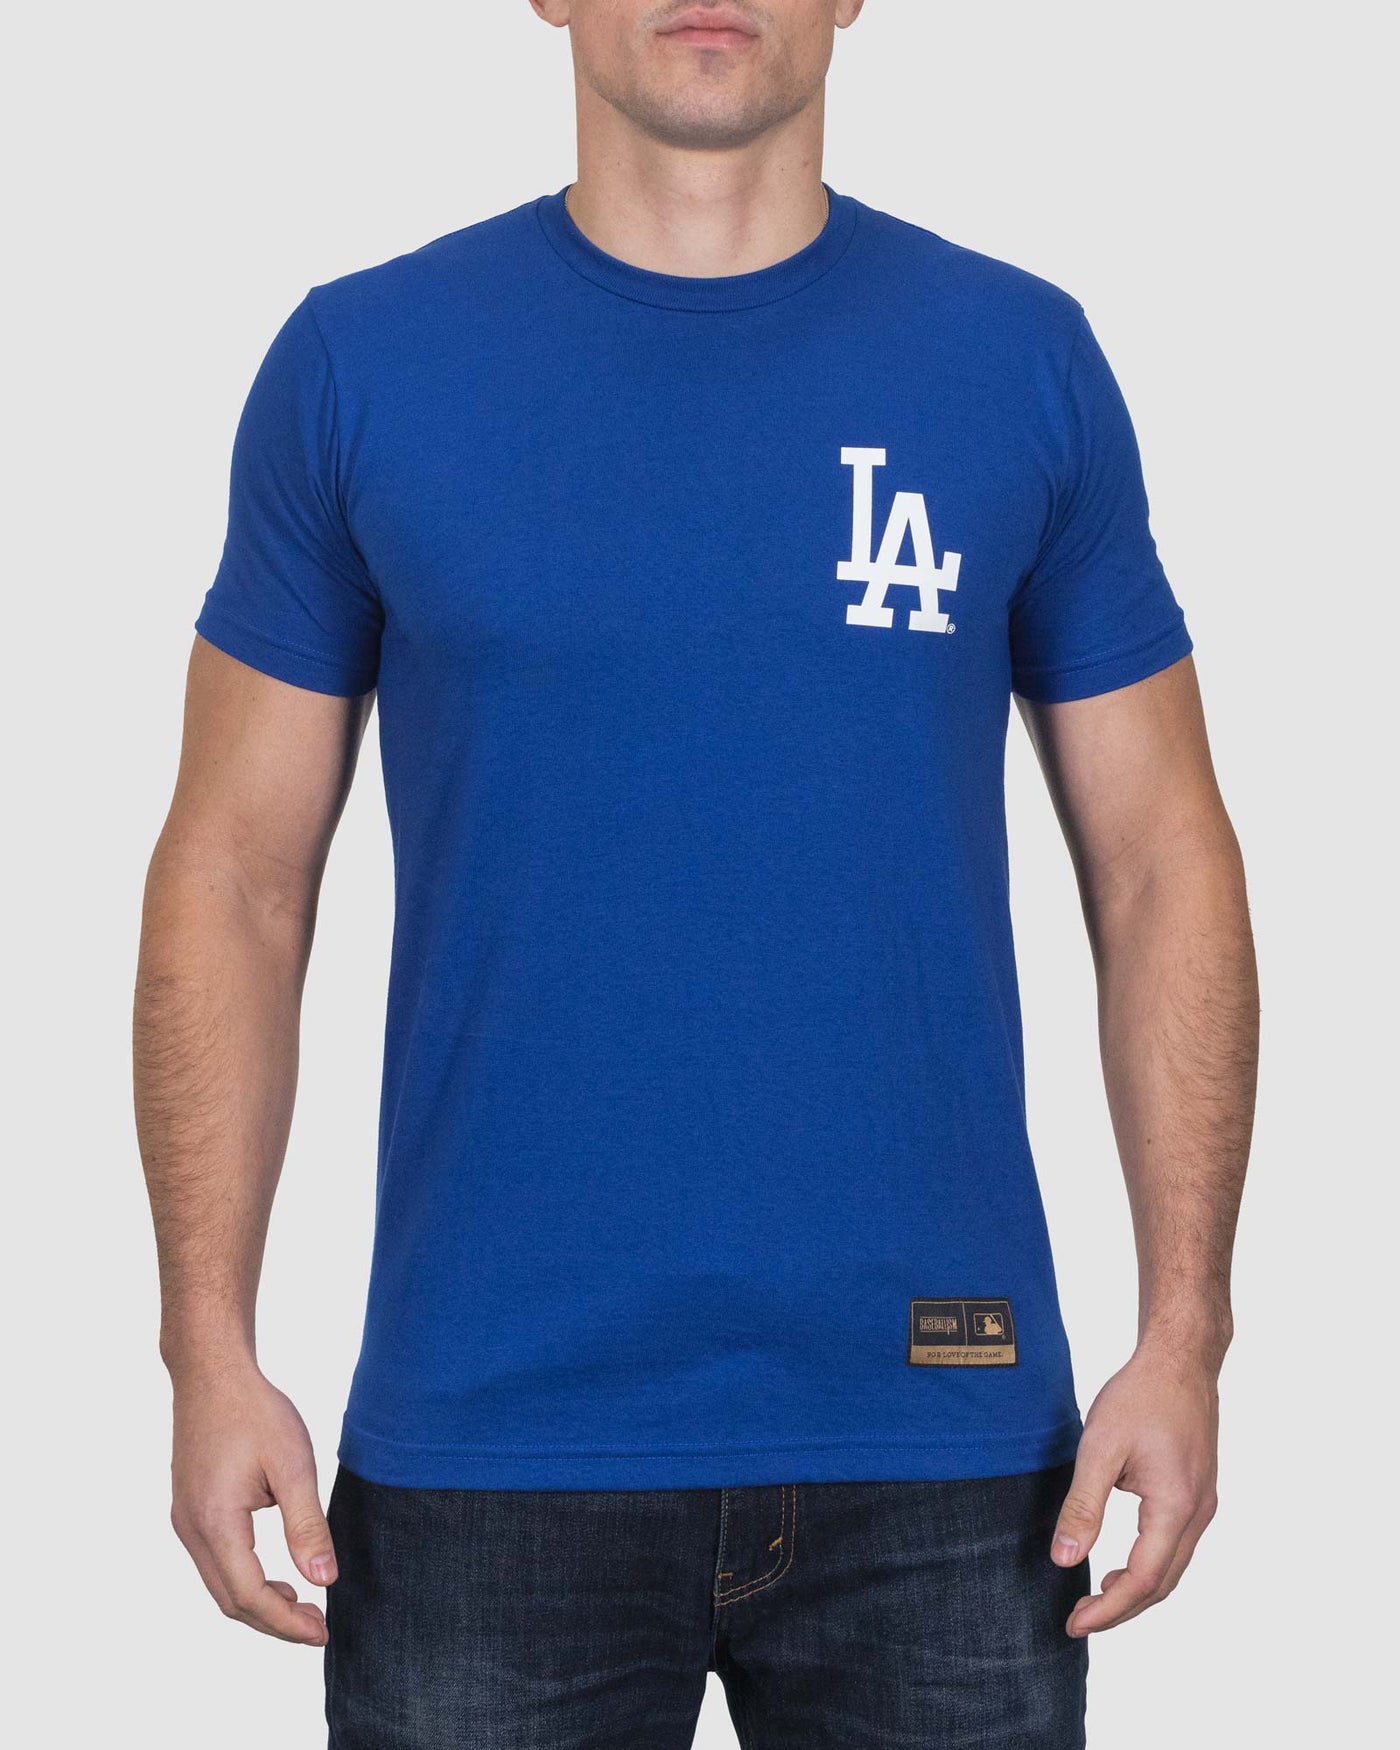 Bandera del oso - Dodgers de Los Ángeles 